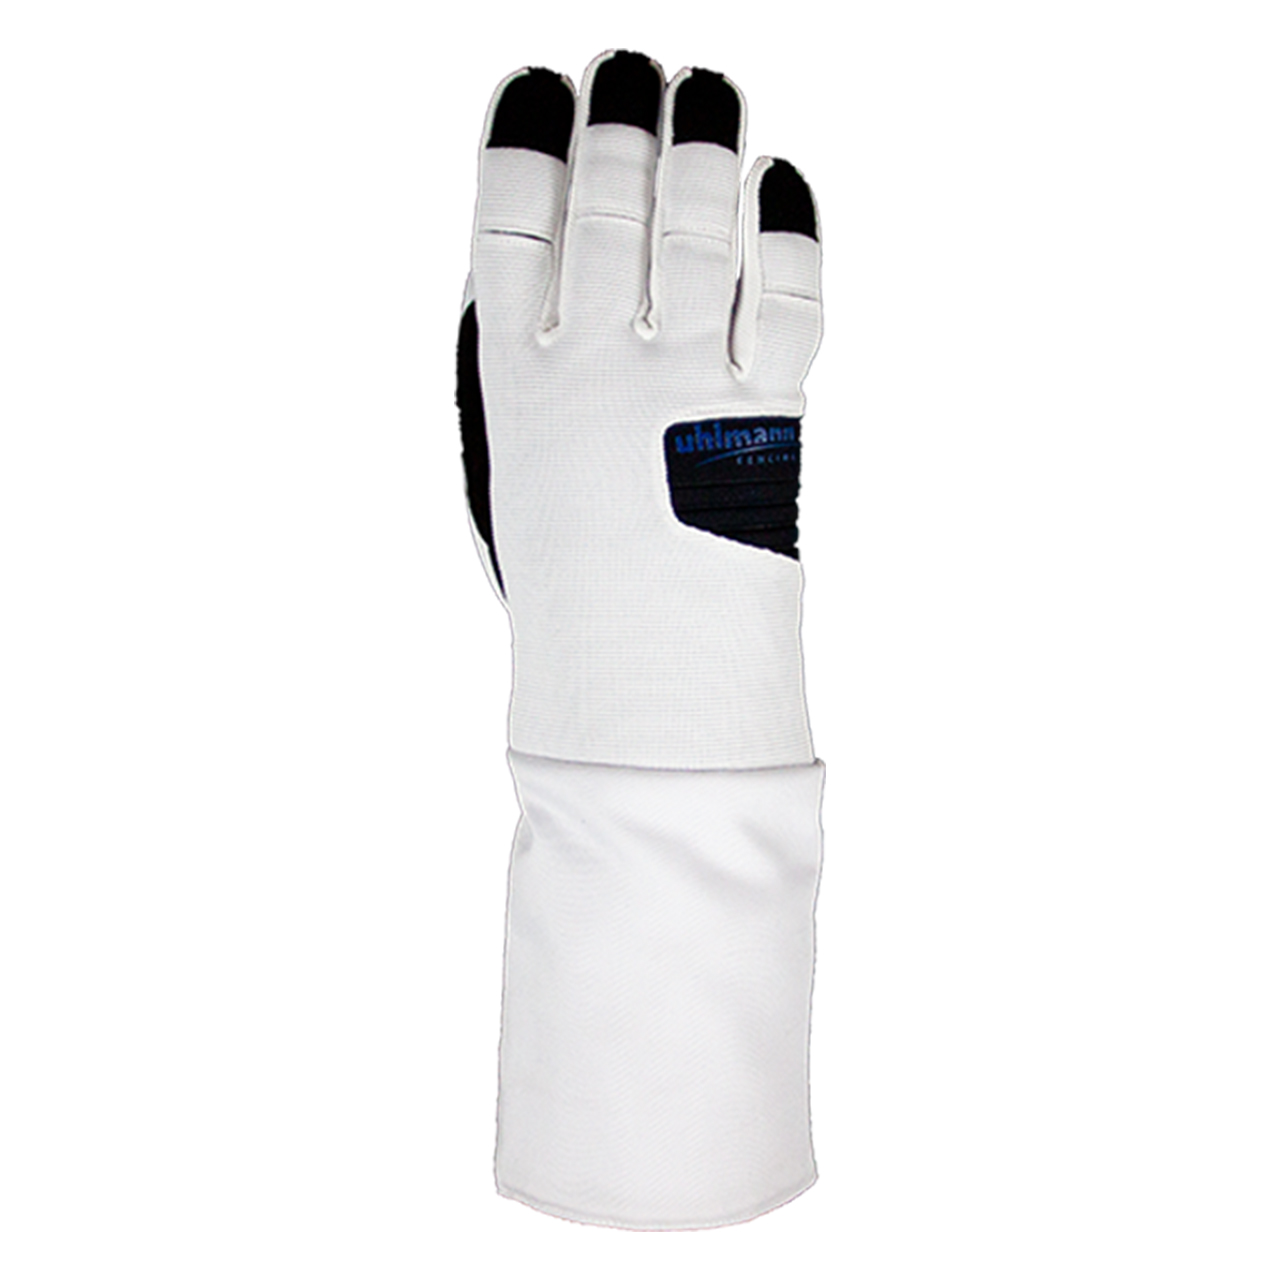 combination glove "Basic 2.0"